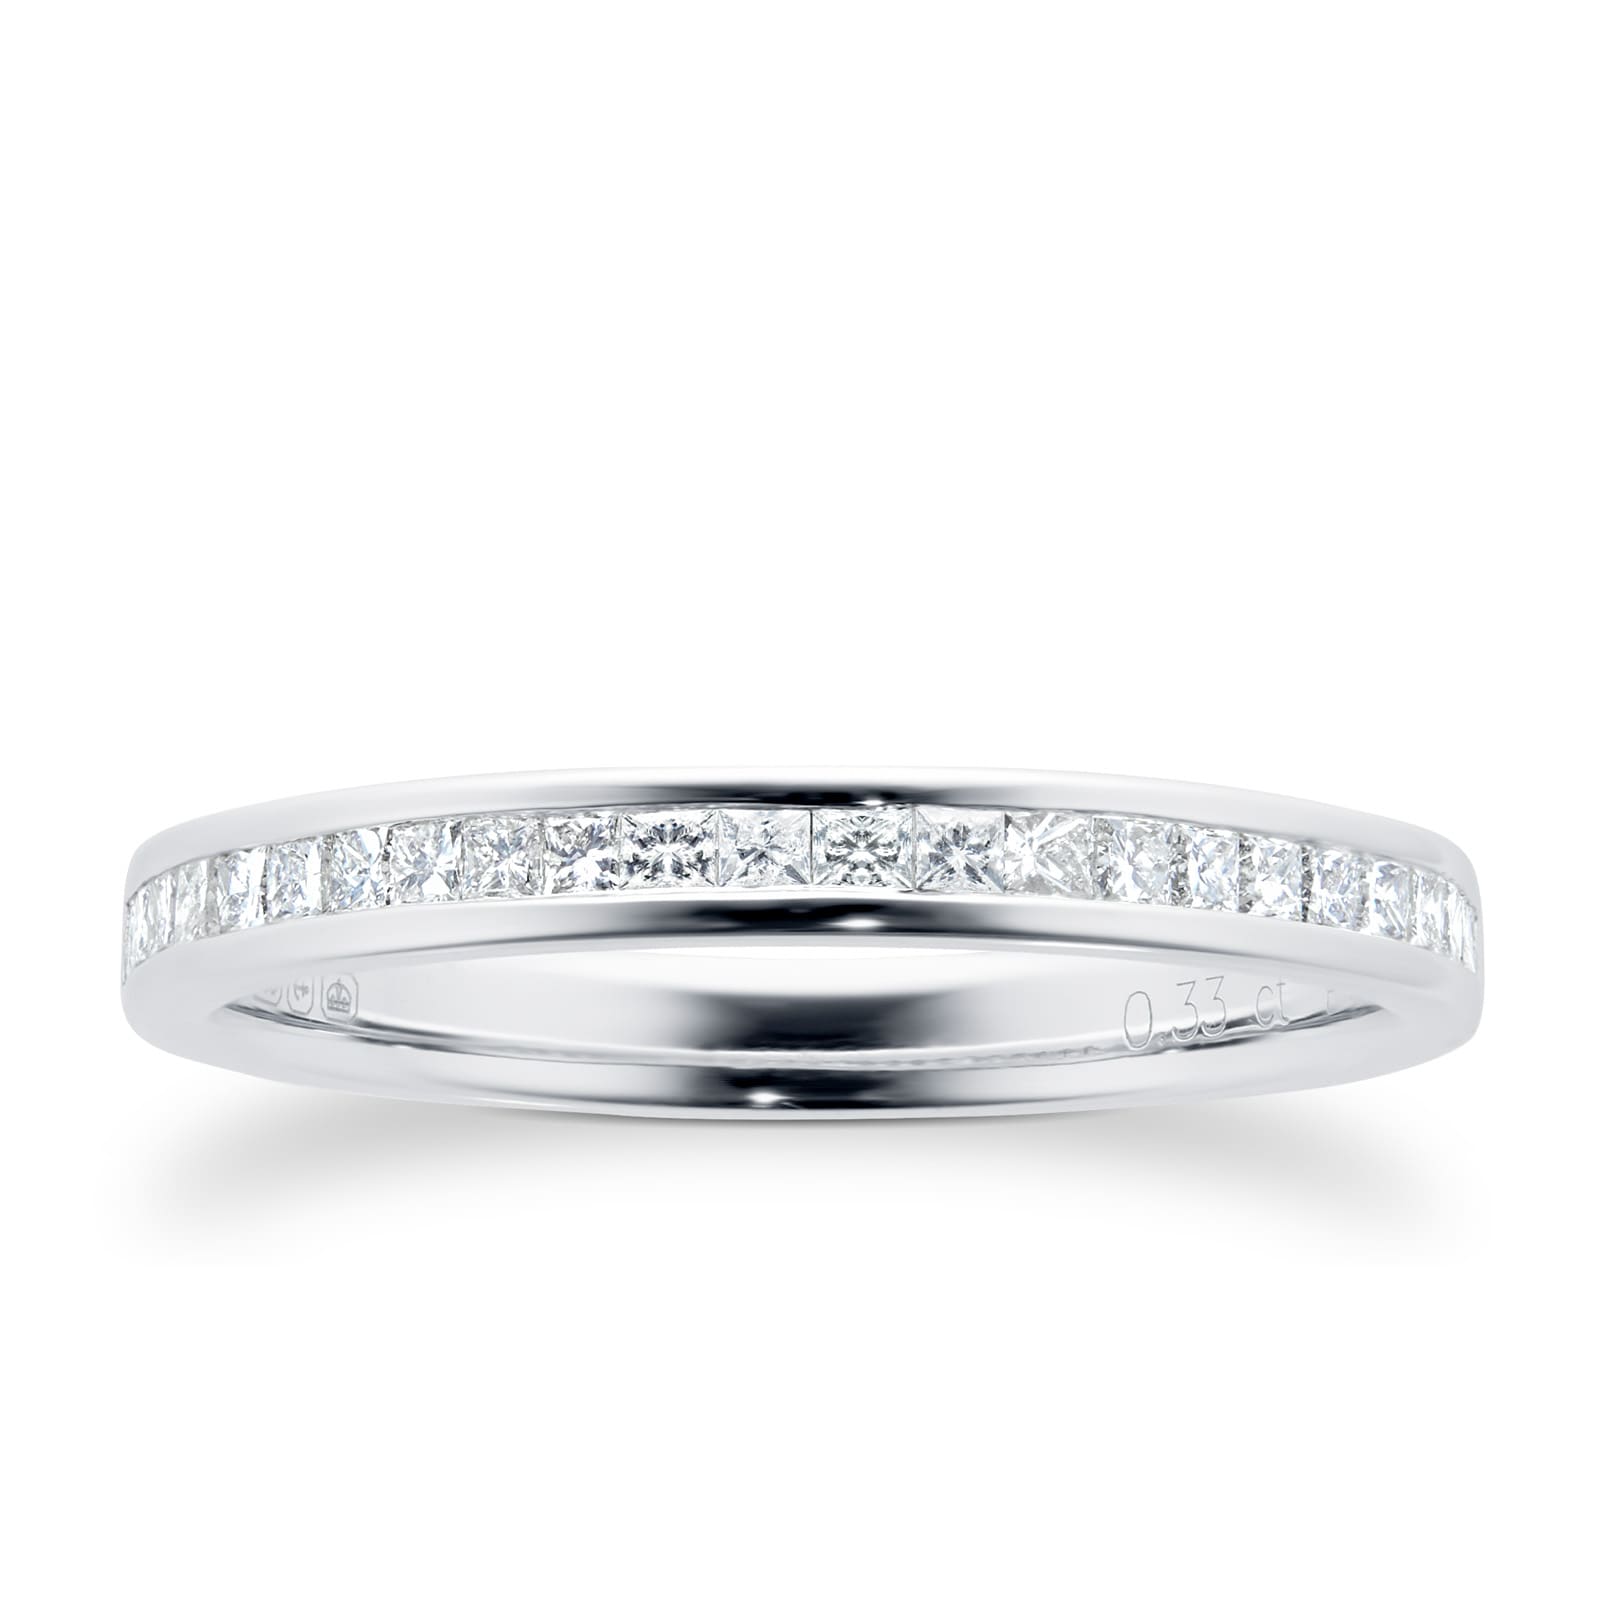 18 Carat White Gold 0.33 Carat Princess Cut Half Eternity Ring - Ring Size K.5